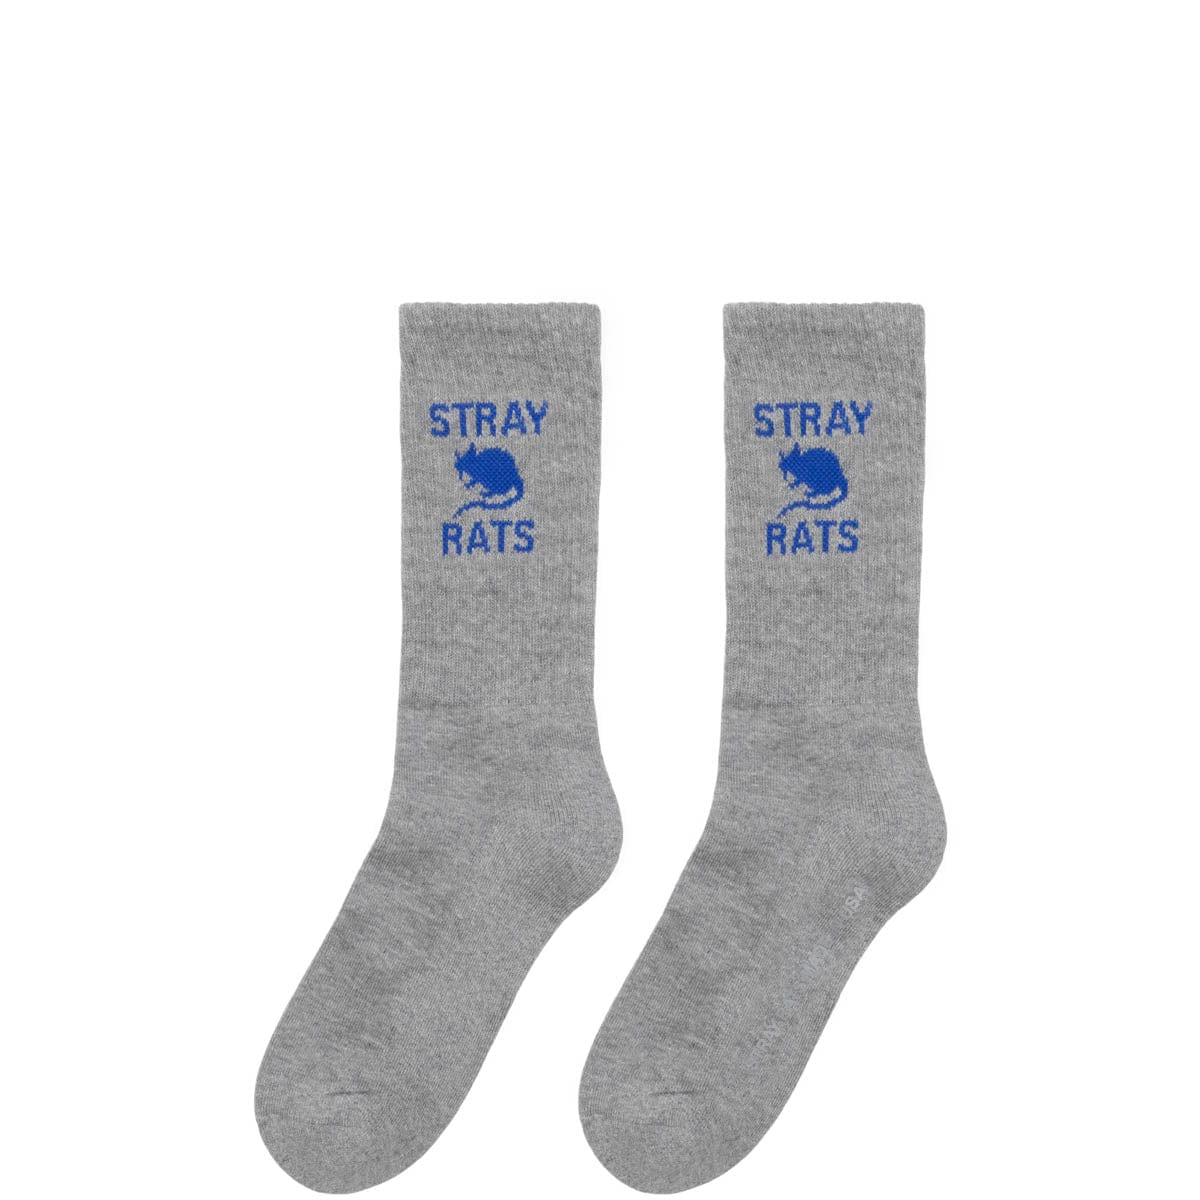 Stray Rats Socks HEATHER GREY / O/S RAT SOCKS